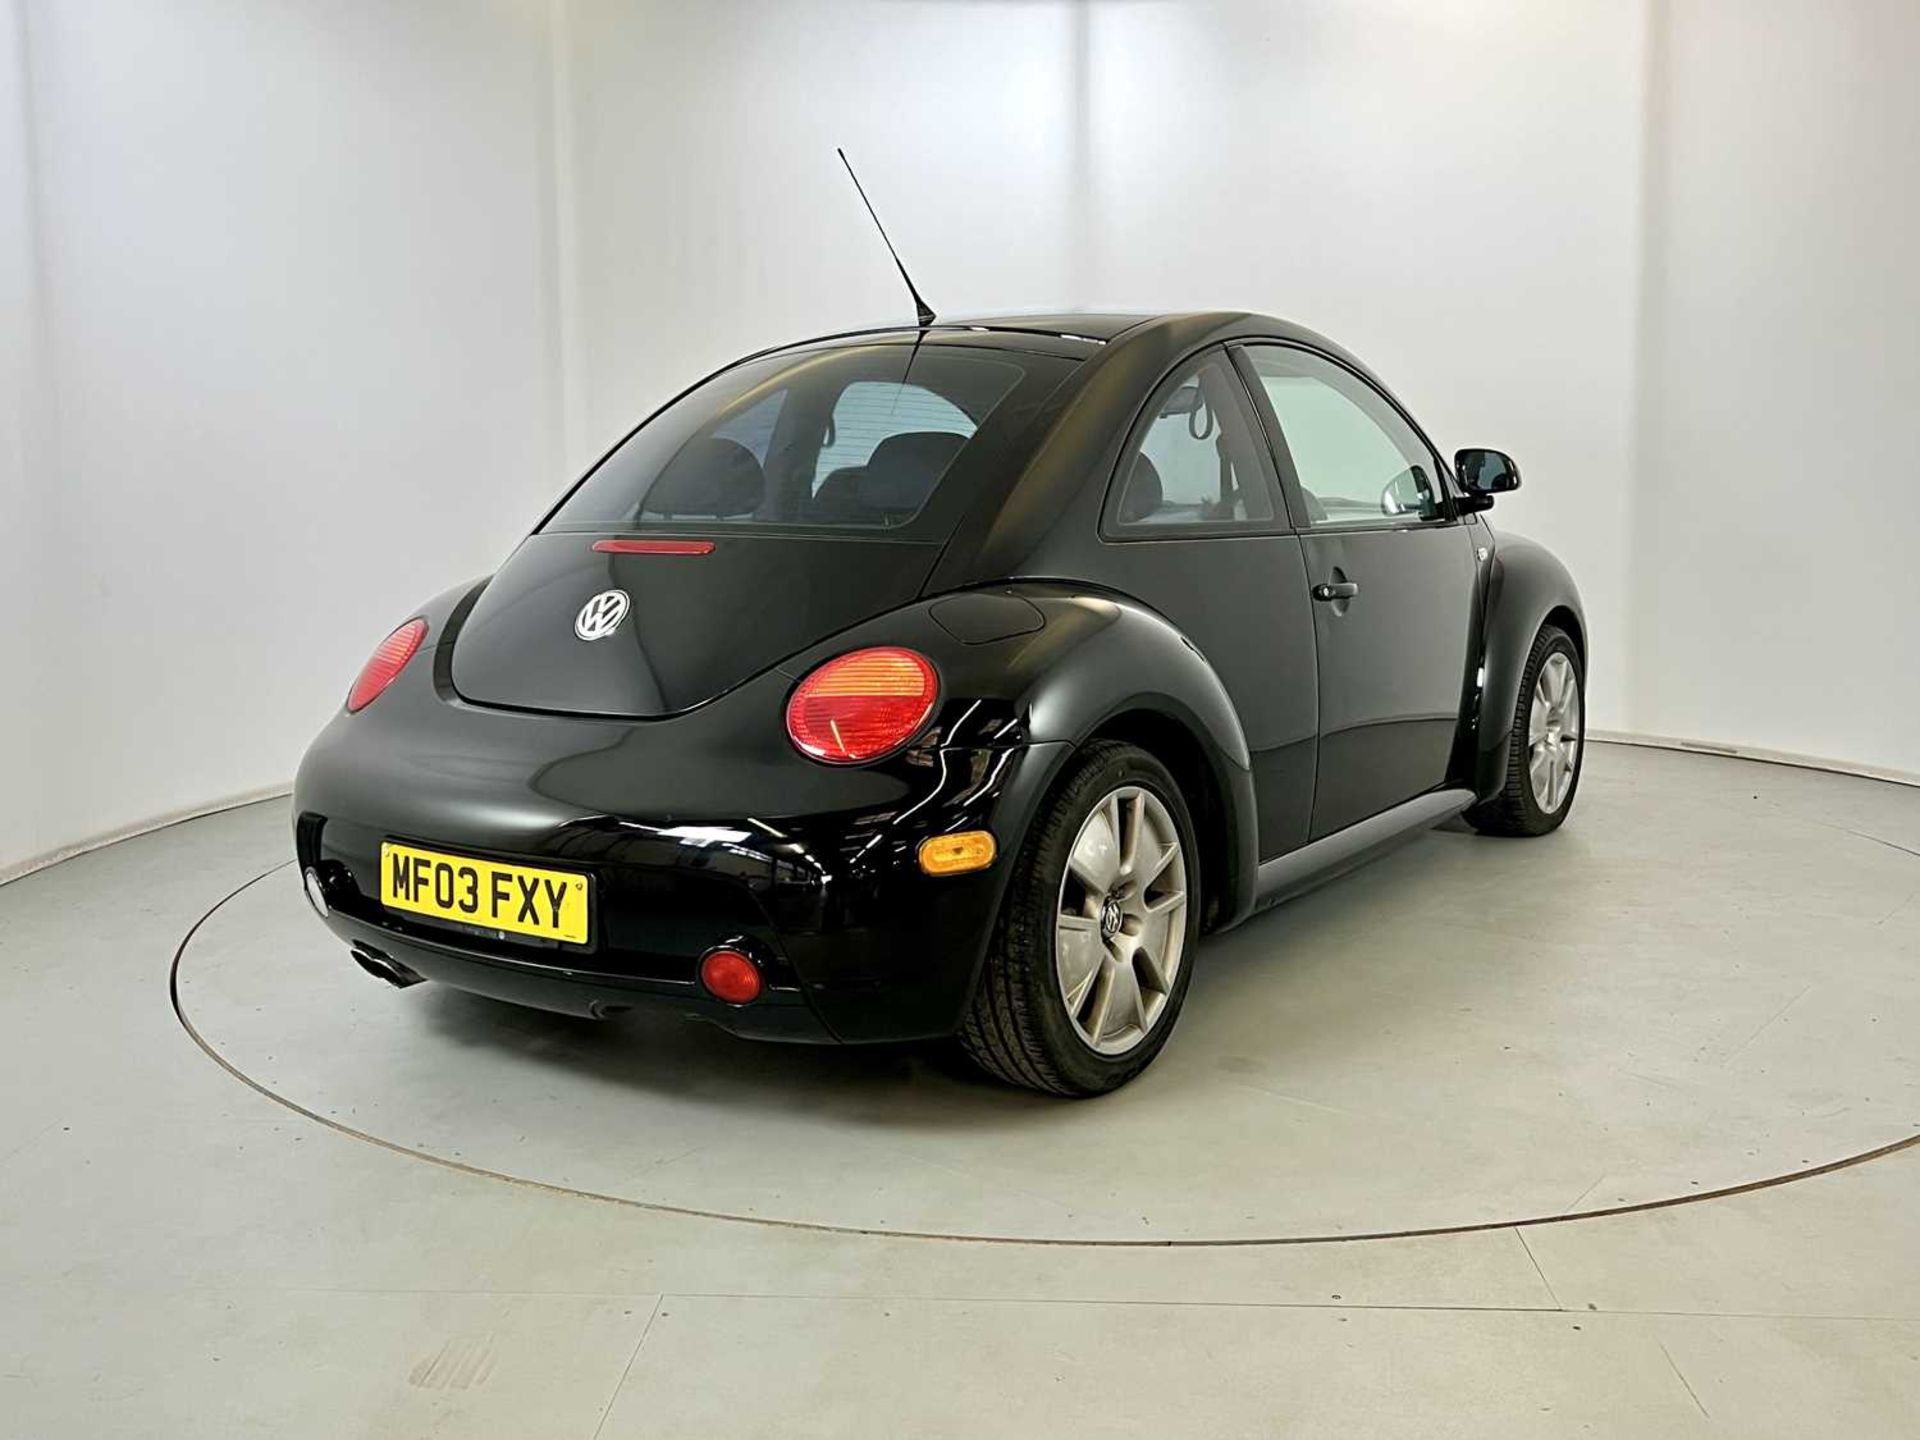 2003 Volkswagen Beetle V5 1 of 500 UK V5 models - Image 9 of 29